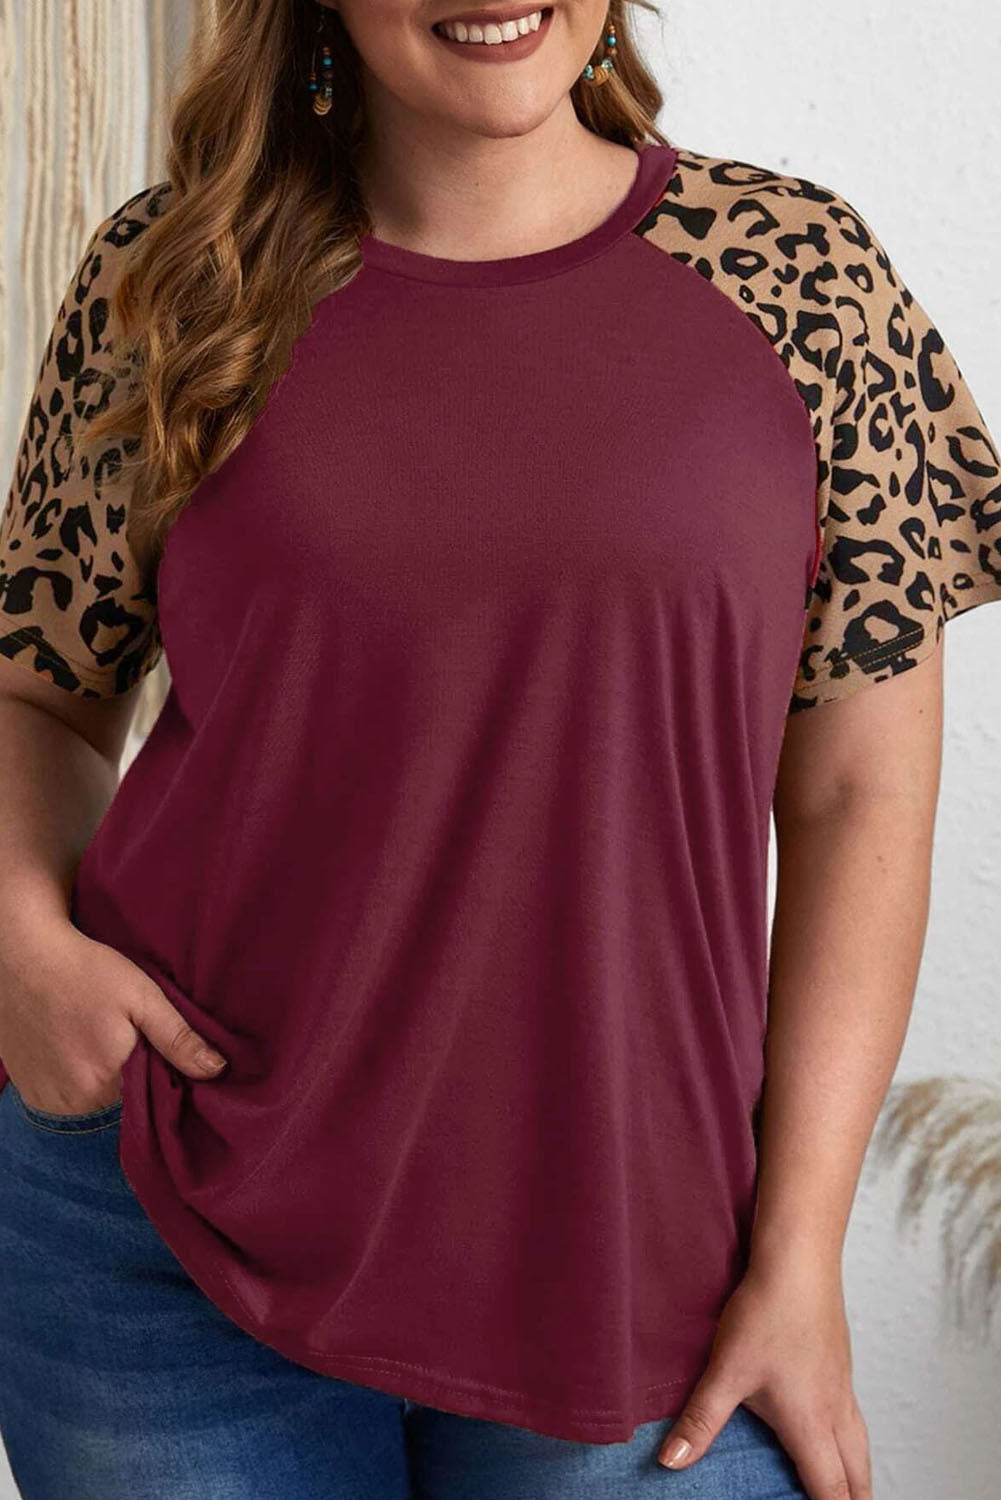 T-shirt taglie forti con maniche raglan leopardate bordeaux a contrasto